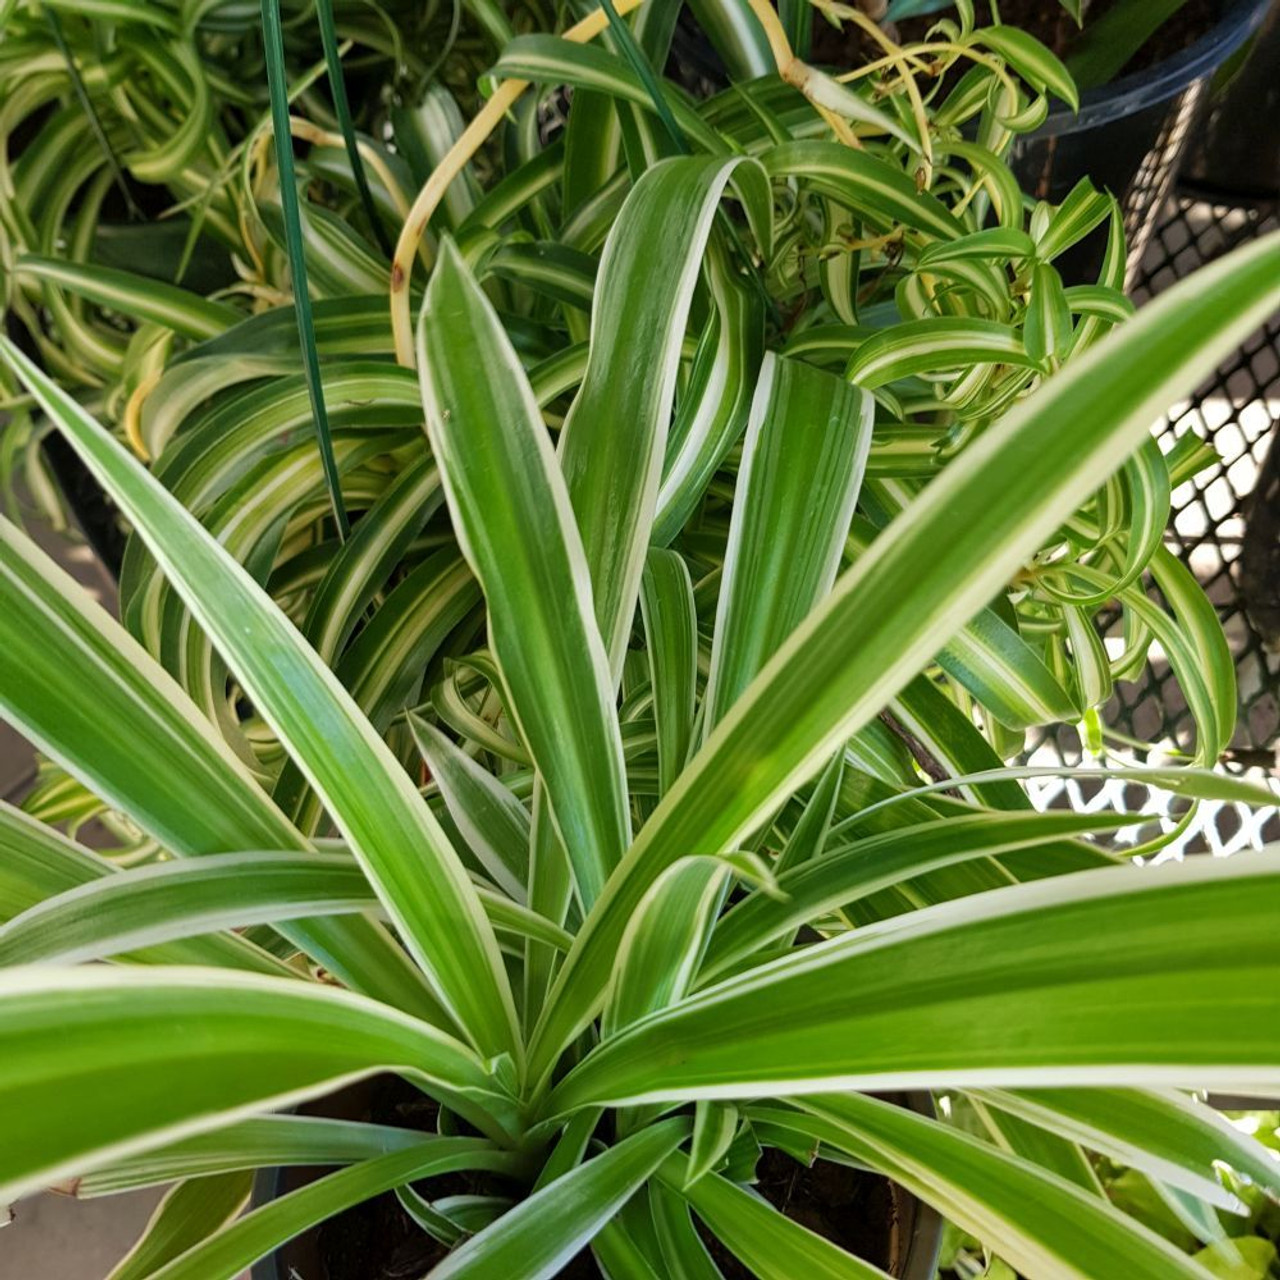 Spider Plant Chlorophytum Variegatum, Established plant approx. 15cm length